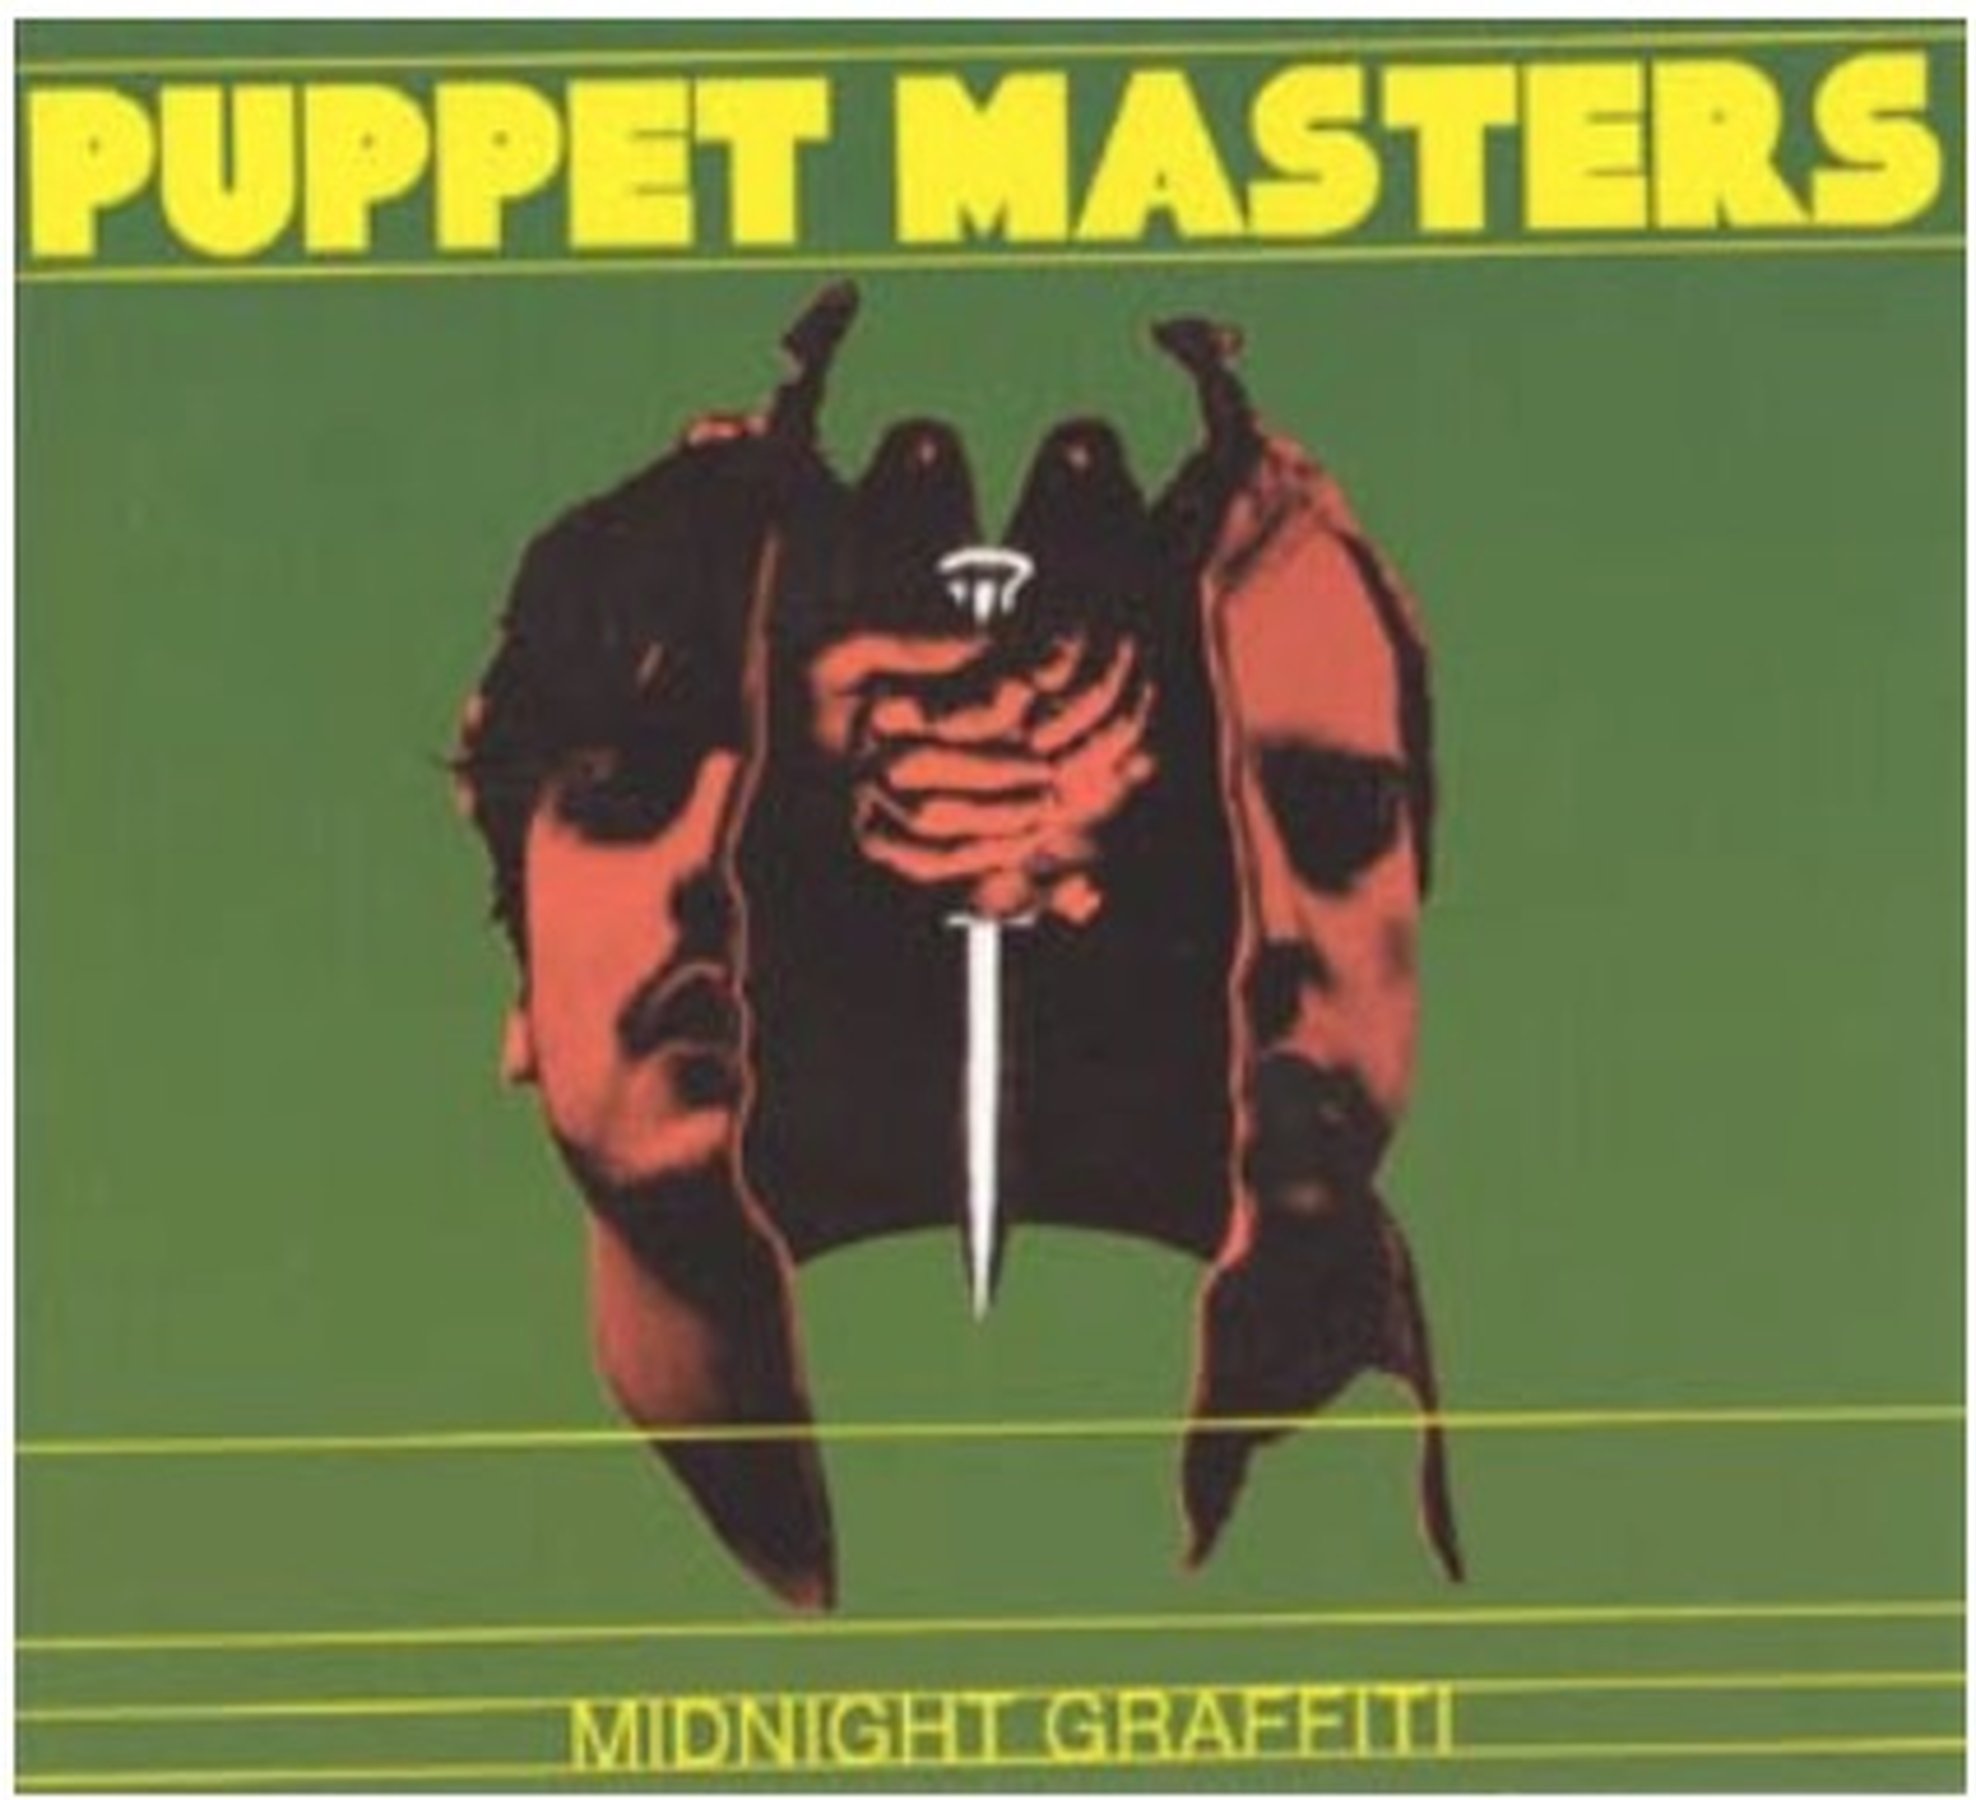 Make It Happen, Recordlabel, 1998-2010, Puppet Masters CD "Midnight Graffiti" mkth 14/03